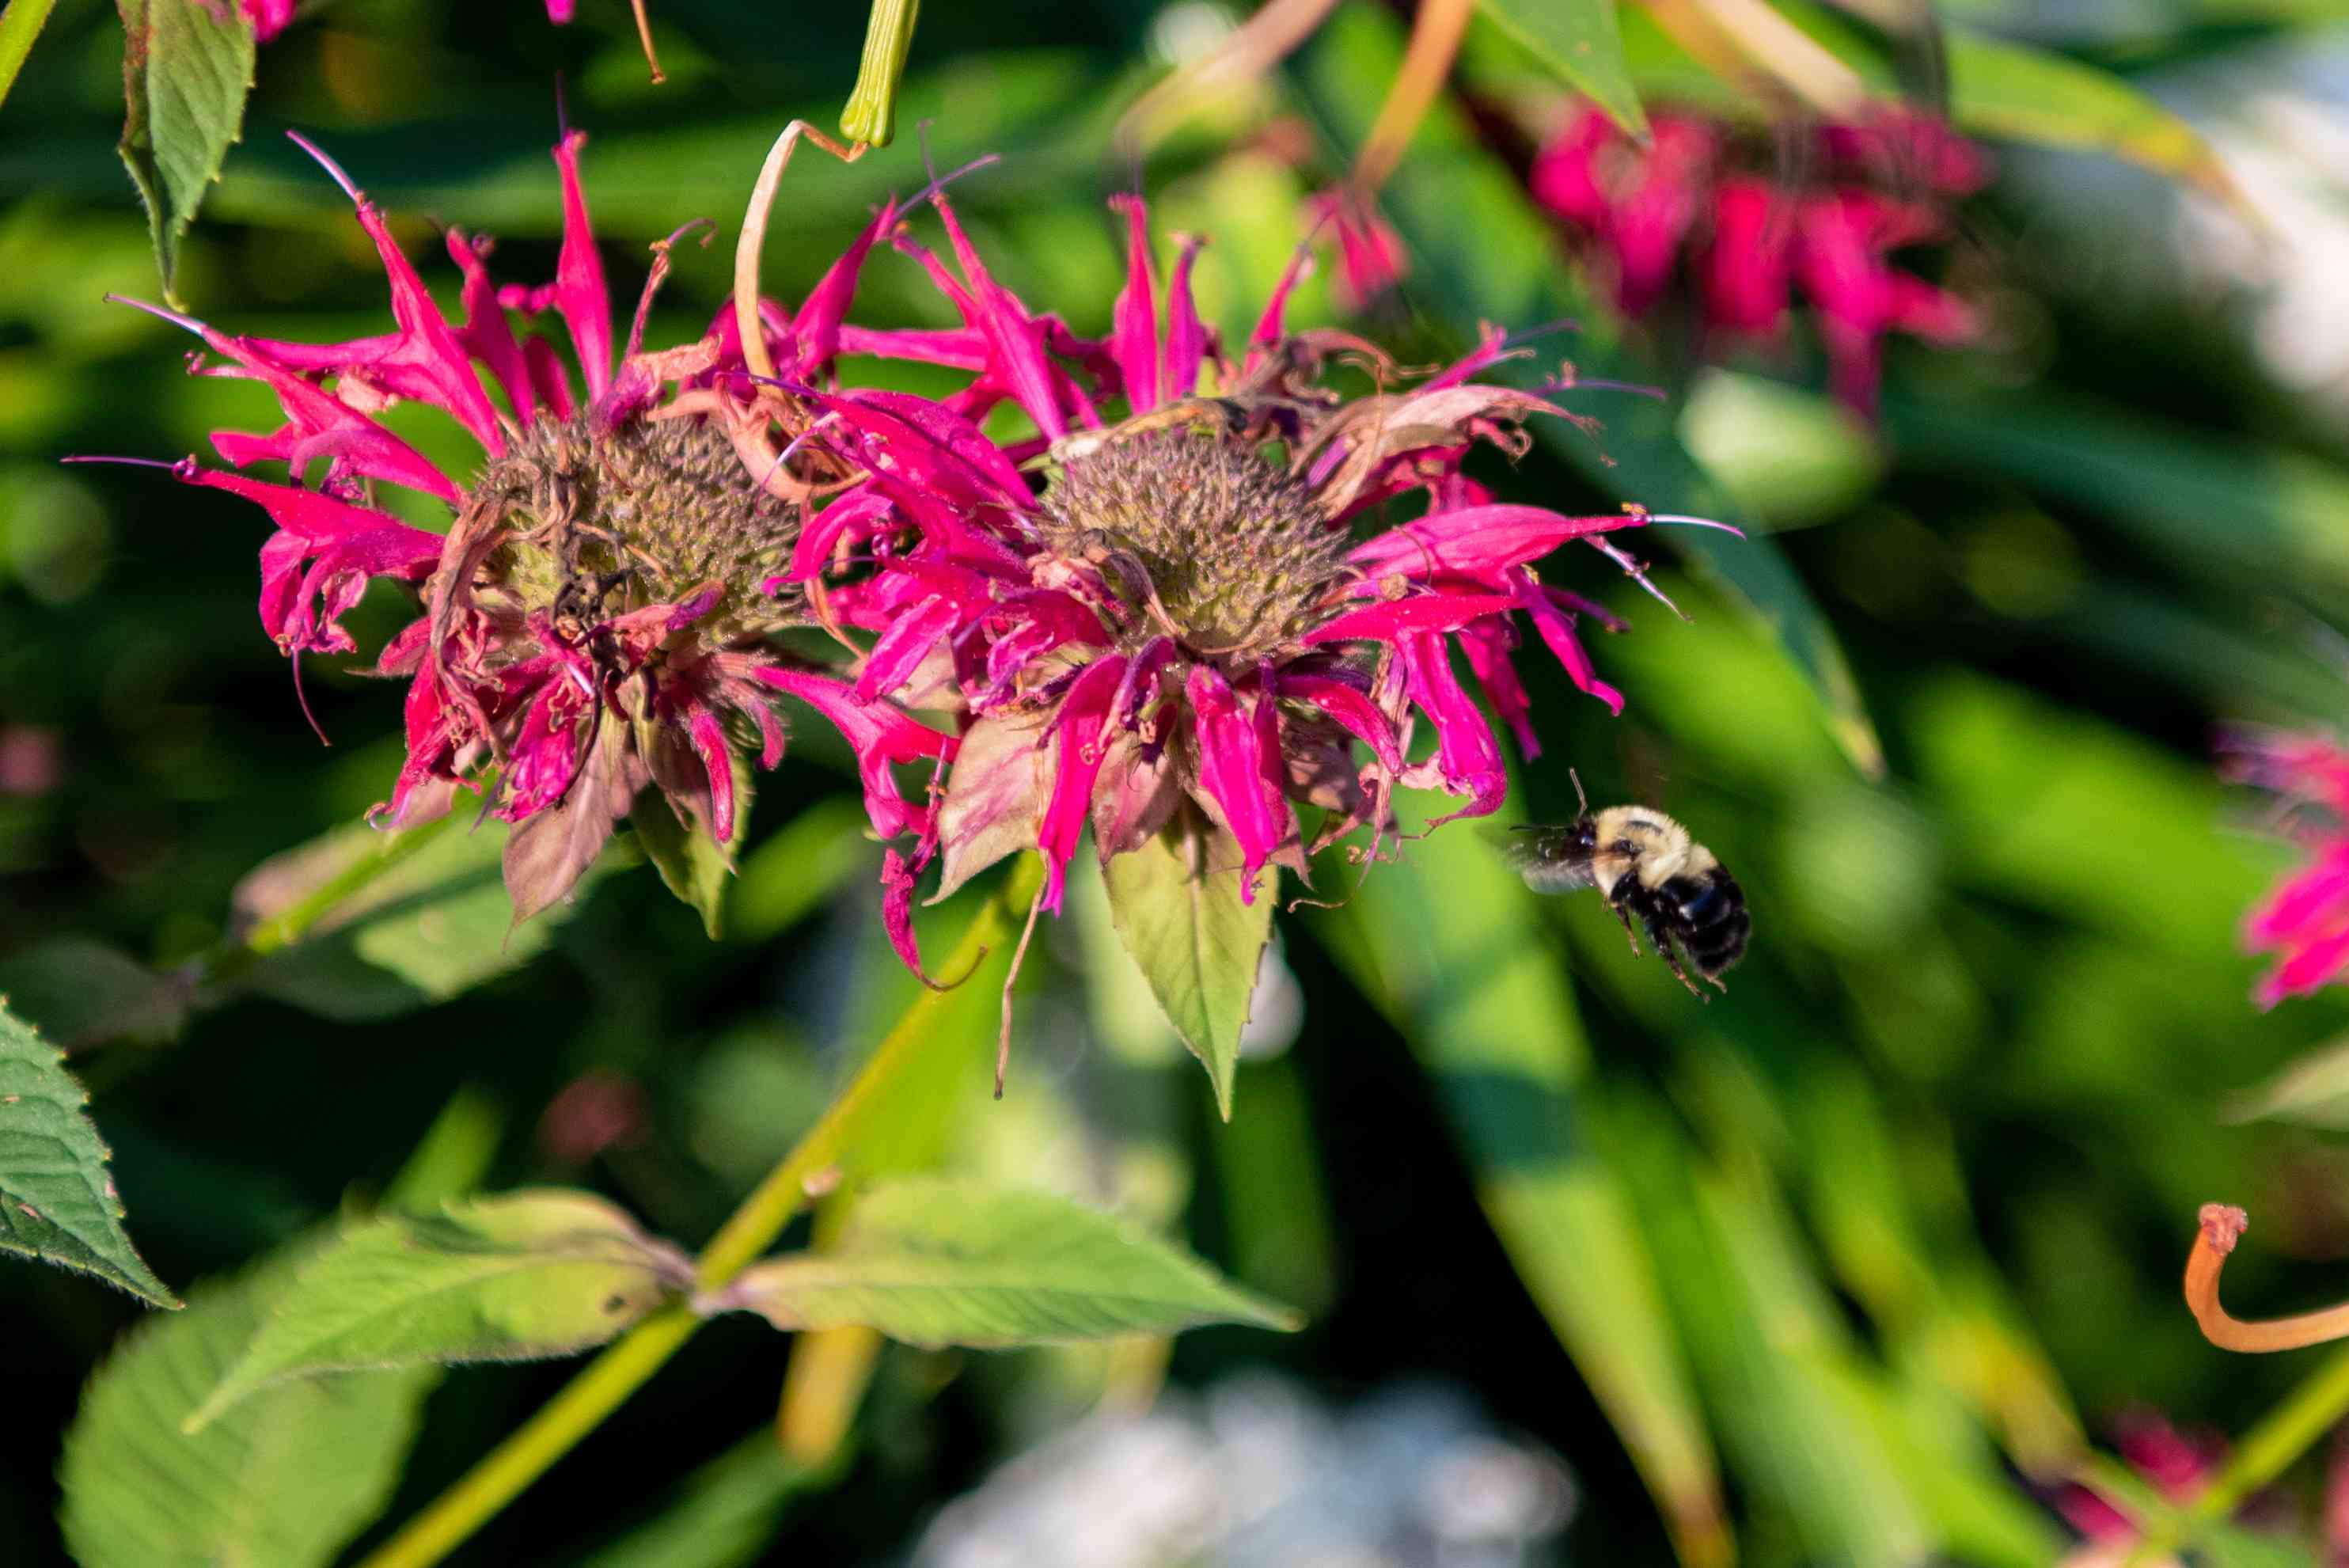 粉红色花朵的特写镜头与模糊大黄蜂徘徊在附近